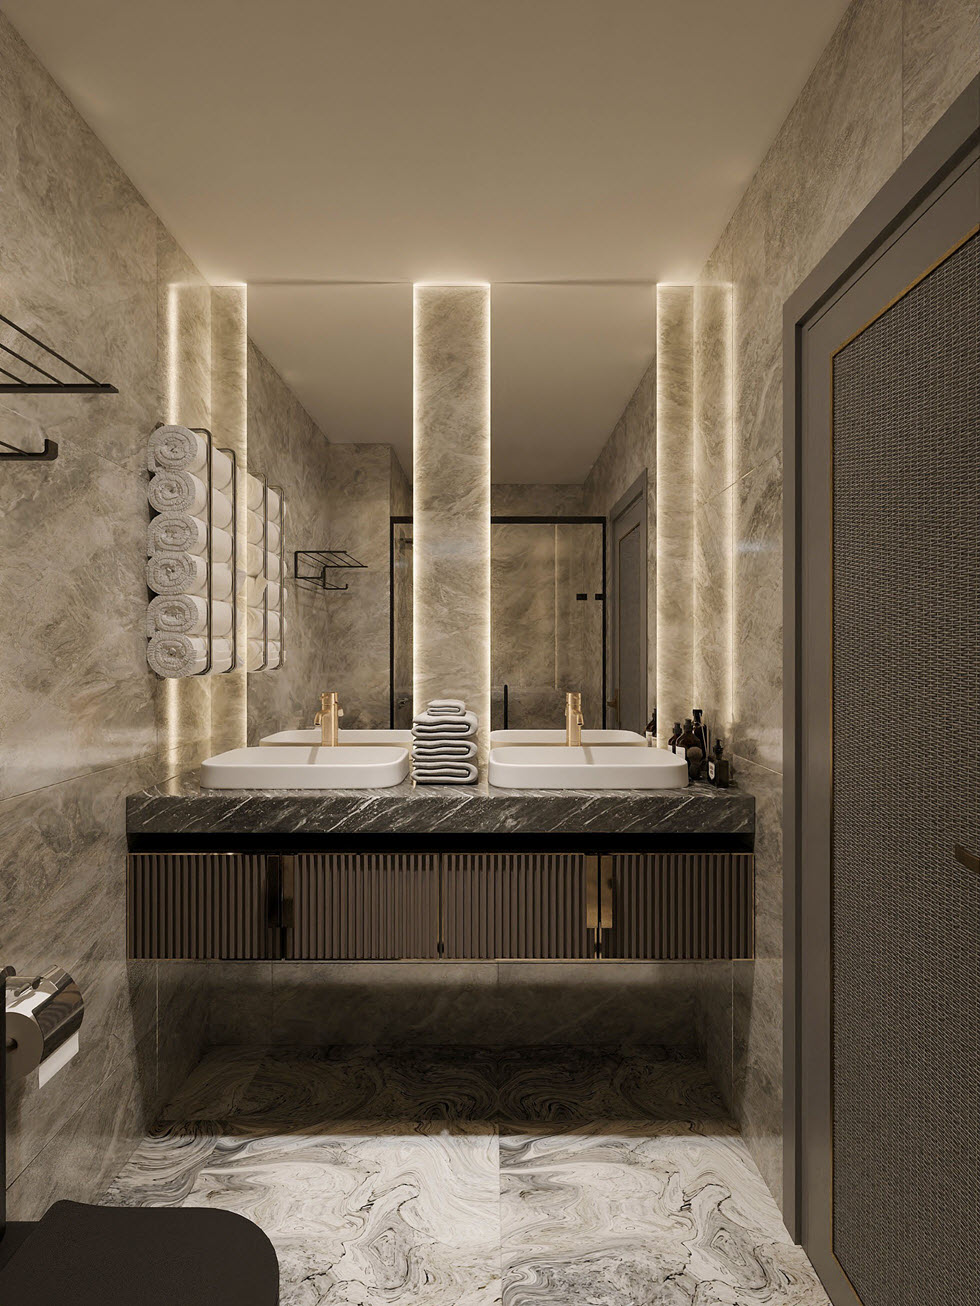 Nội thất phòng tắm, vệ sinh được hoàn thiện với vật liệu cao cấp, tông màu trung tính sang trọng tựa như khách sạn 5 sao.